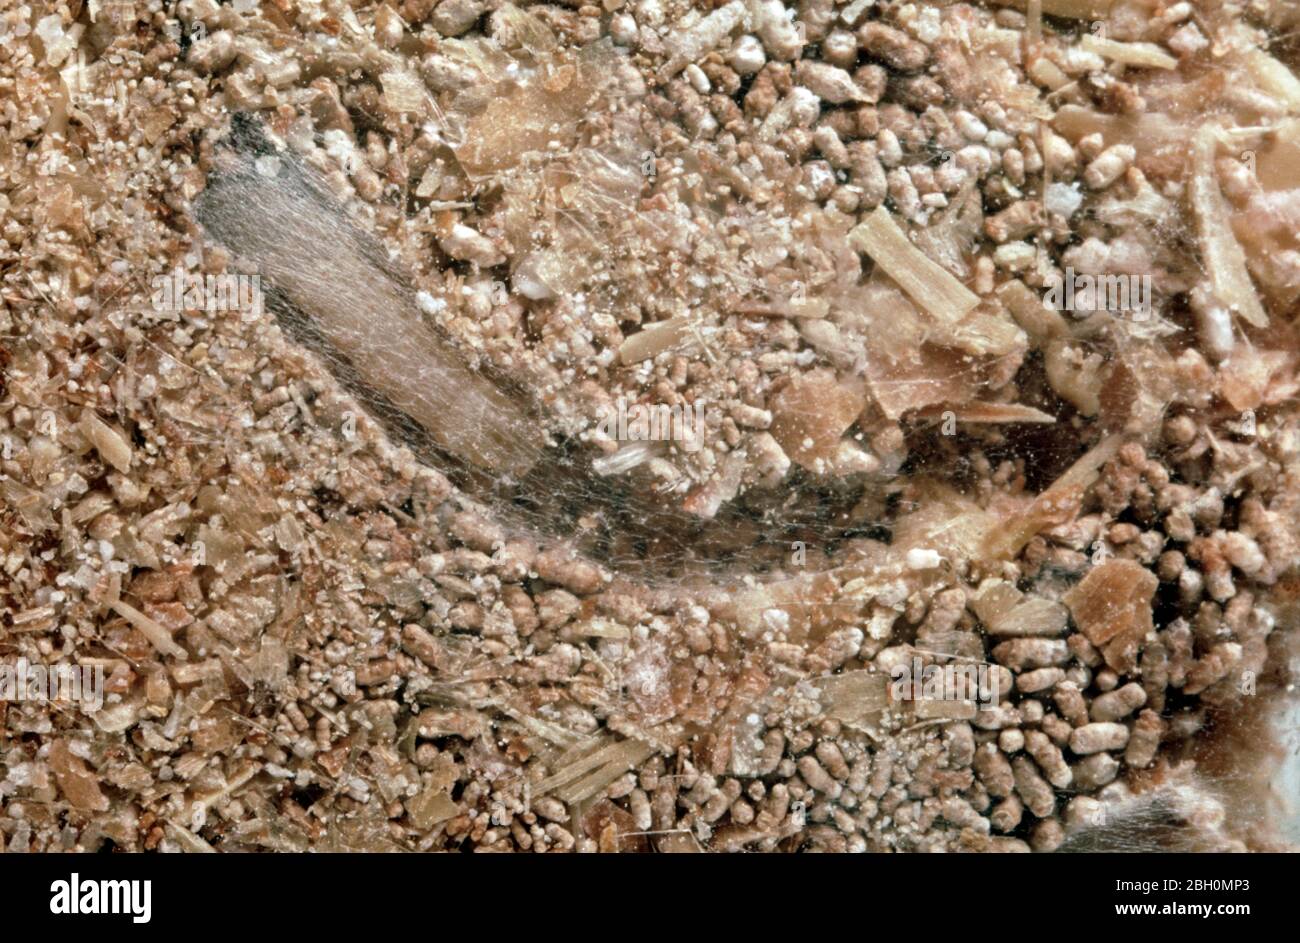 Moth d'entrepôt (Ephestia elutella) caterpillar de ravageur de stockage de céréales avec sangle dans le tunnel de farine de grain Banque D'Images